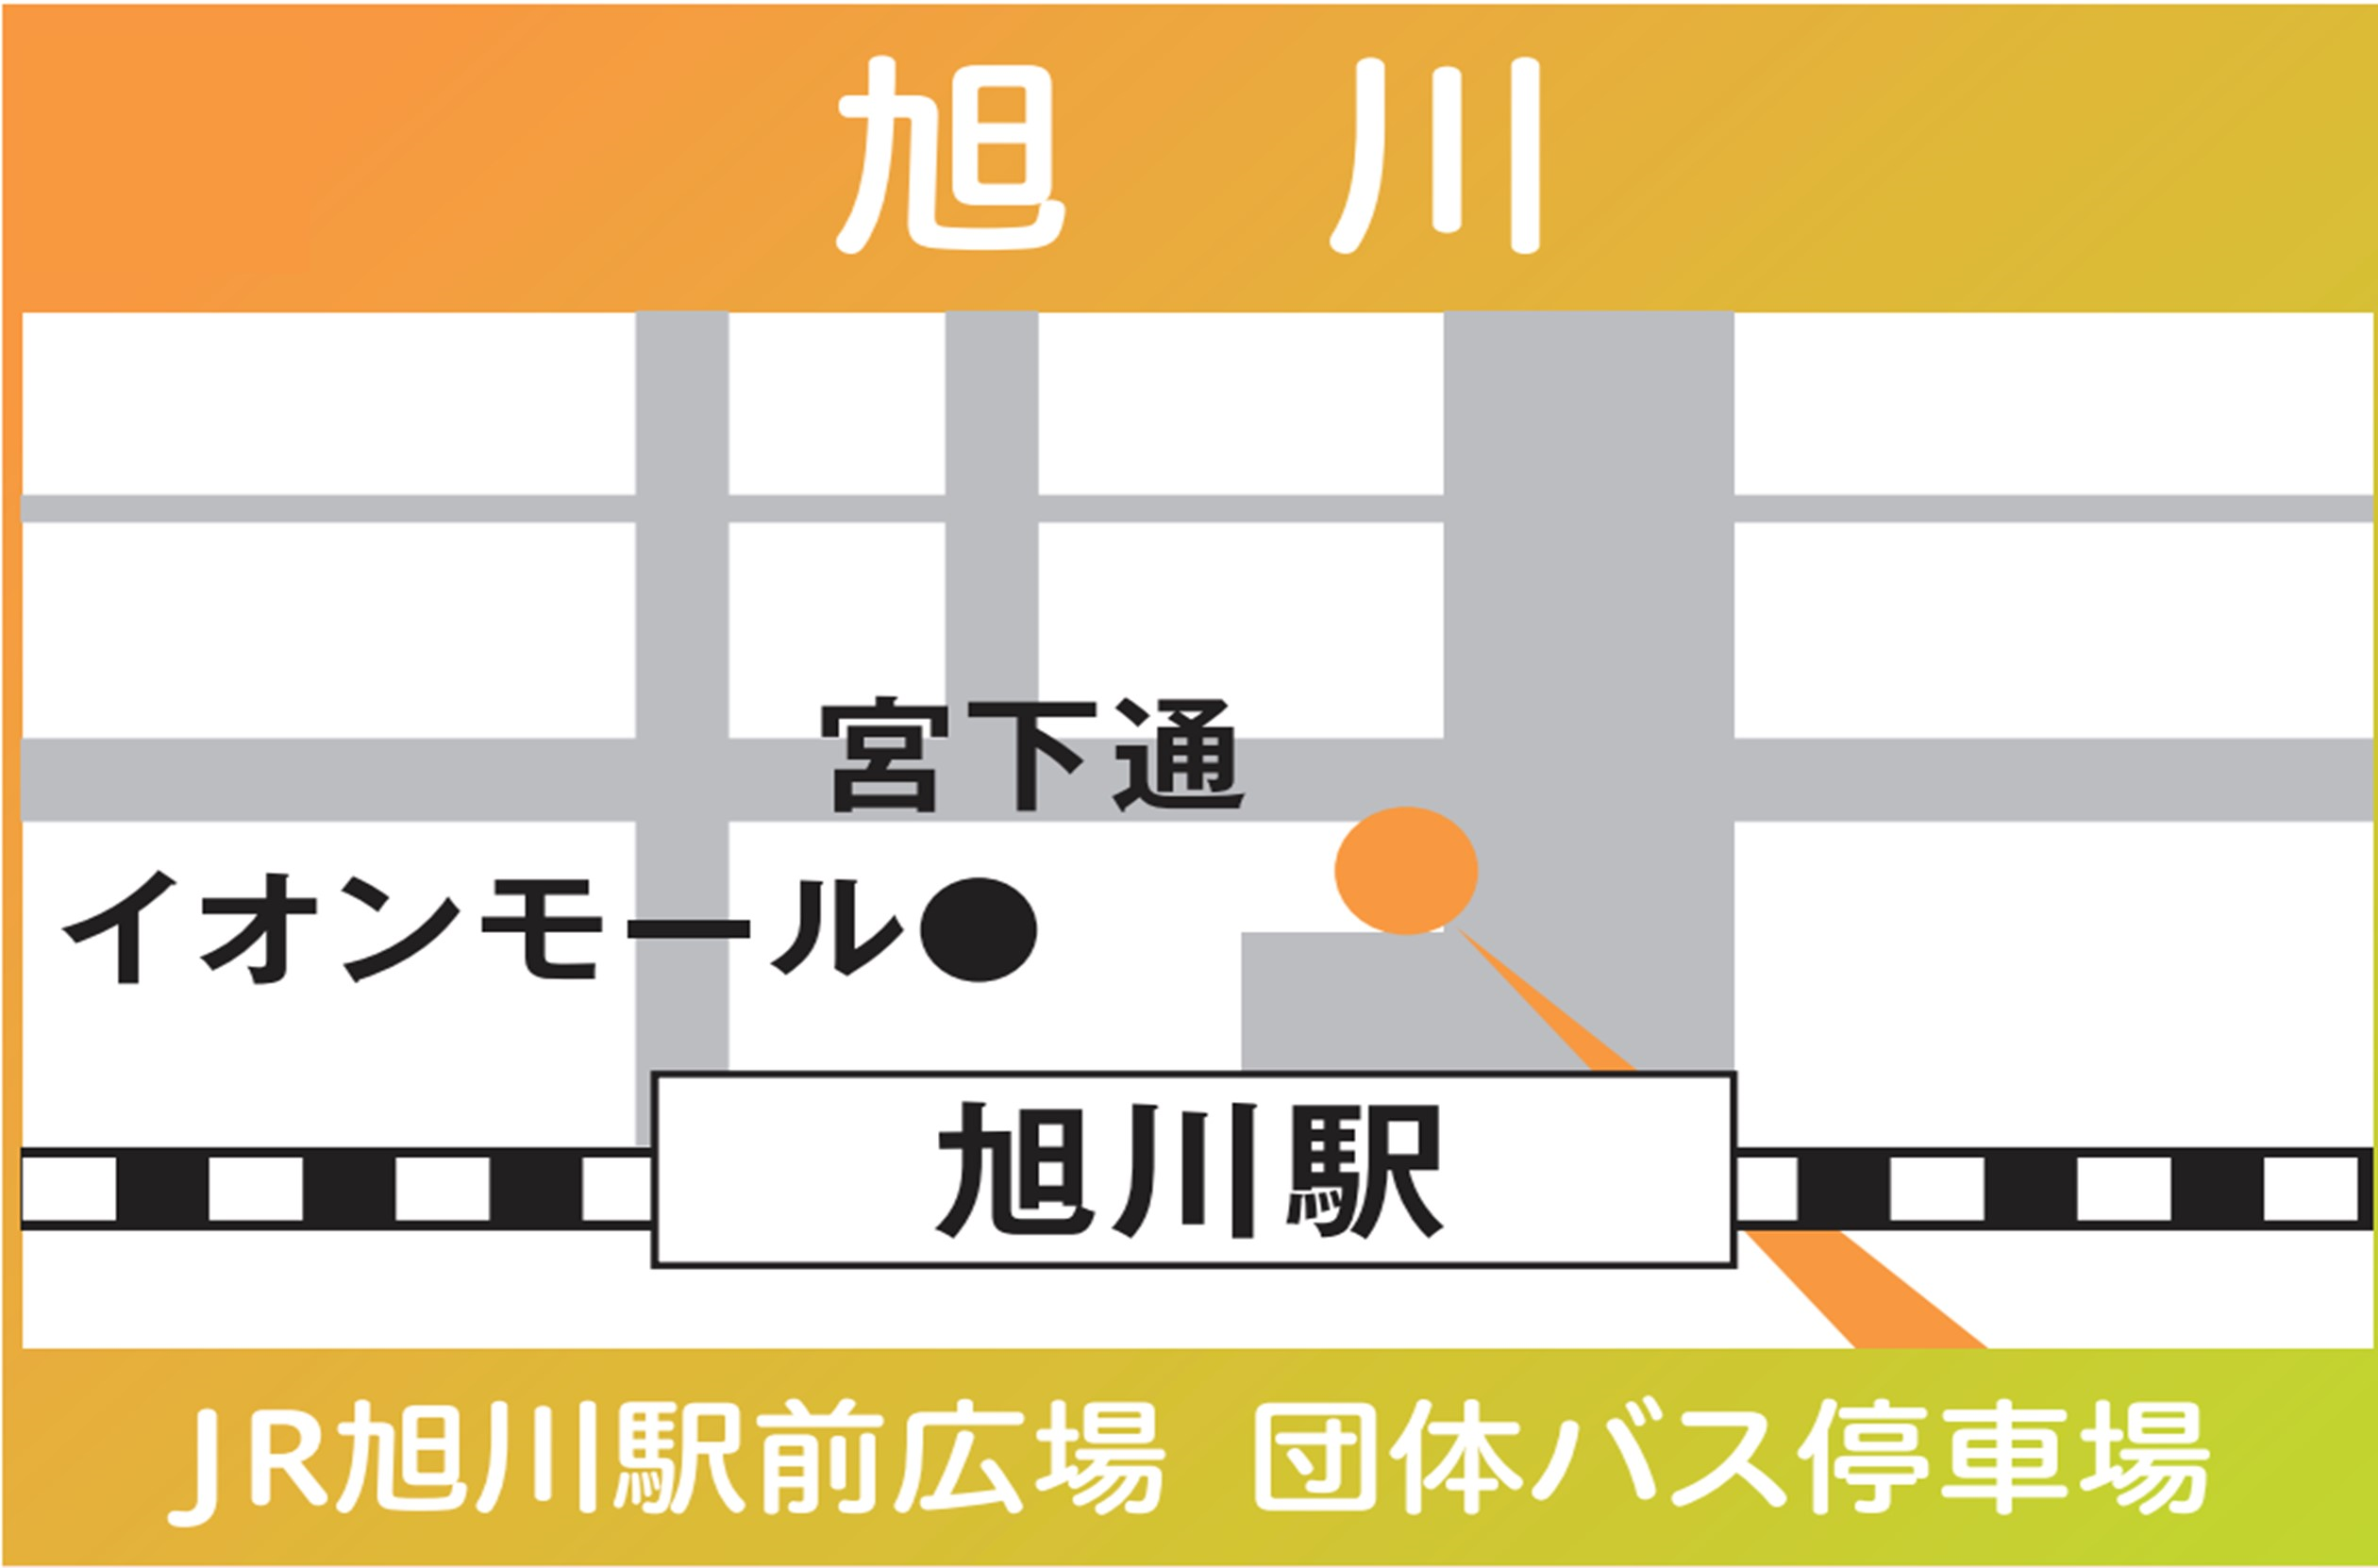 地図：旭川（JR旭川駅前広場 団体バス停車場）※2024年3/30㈯限定運行